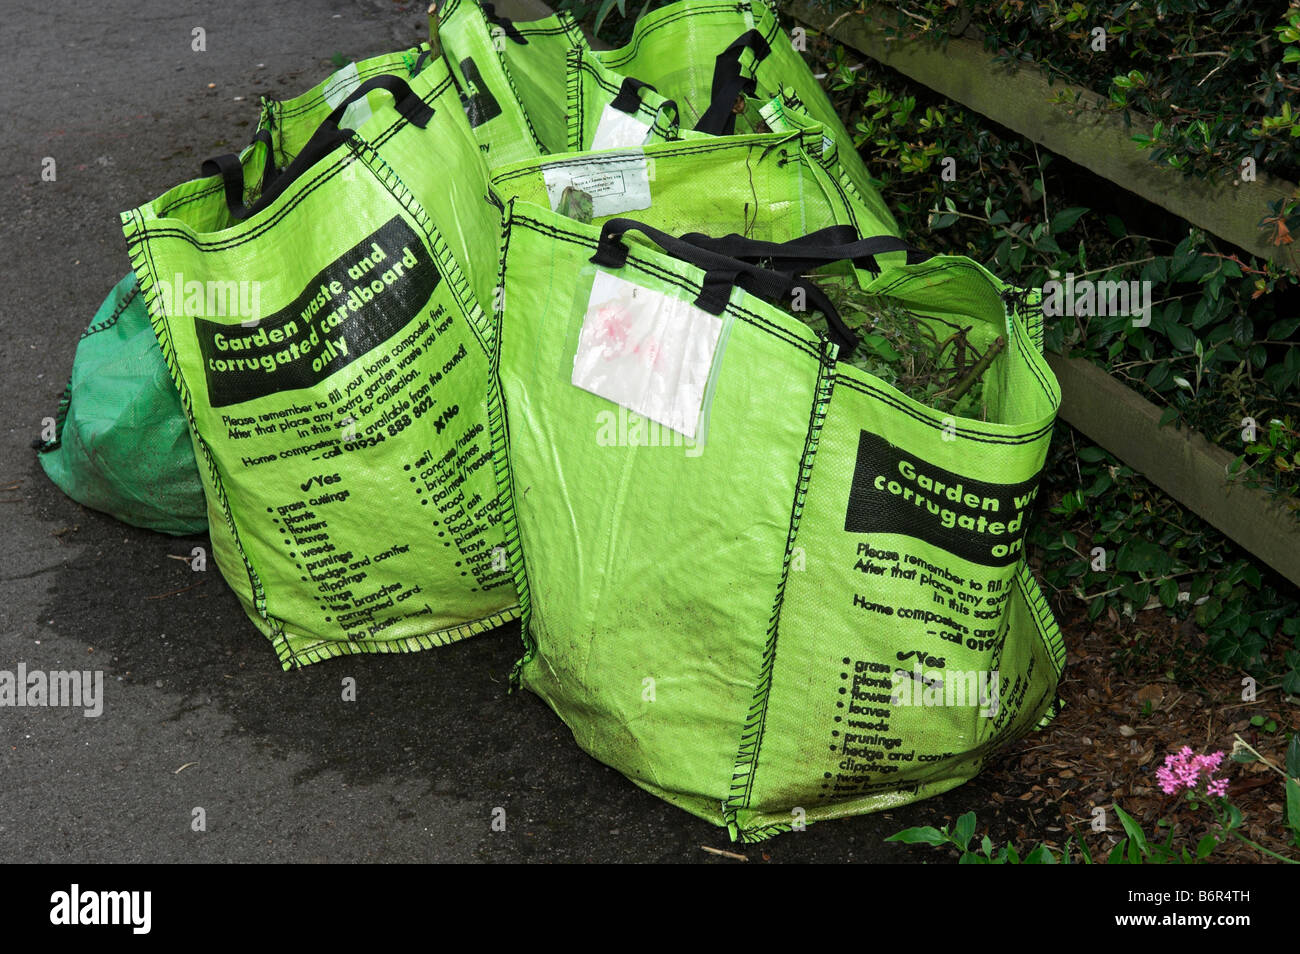 Déchets de jardin [Vert] sac sacs de déchets recyclage Angleterre Banque D'Images